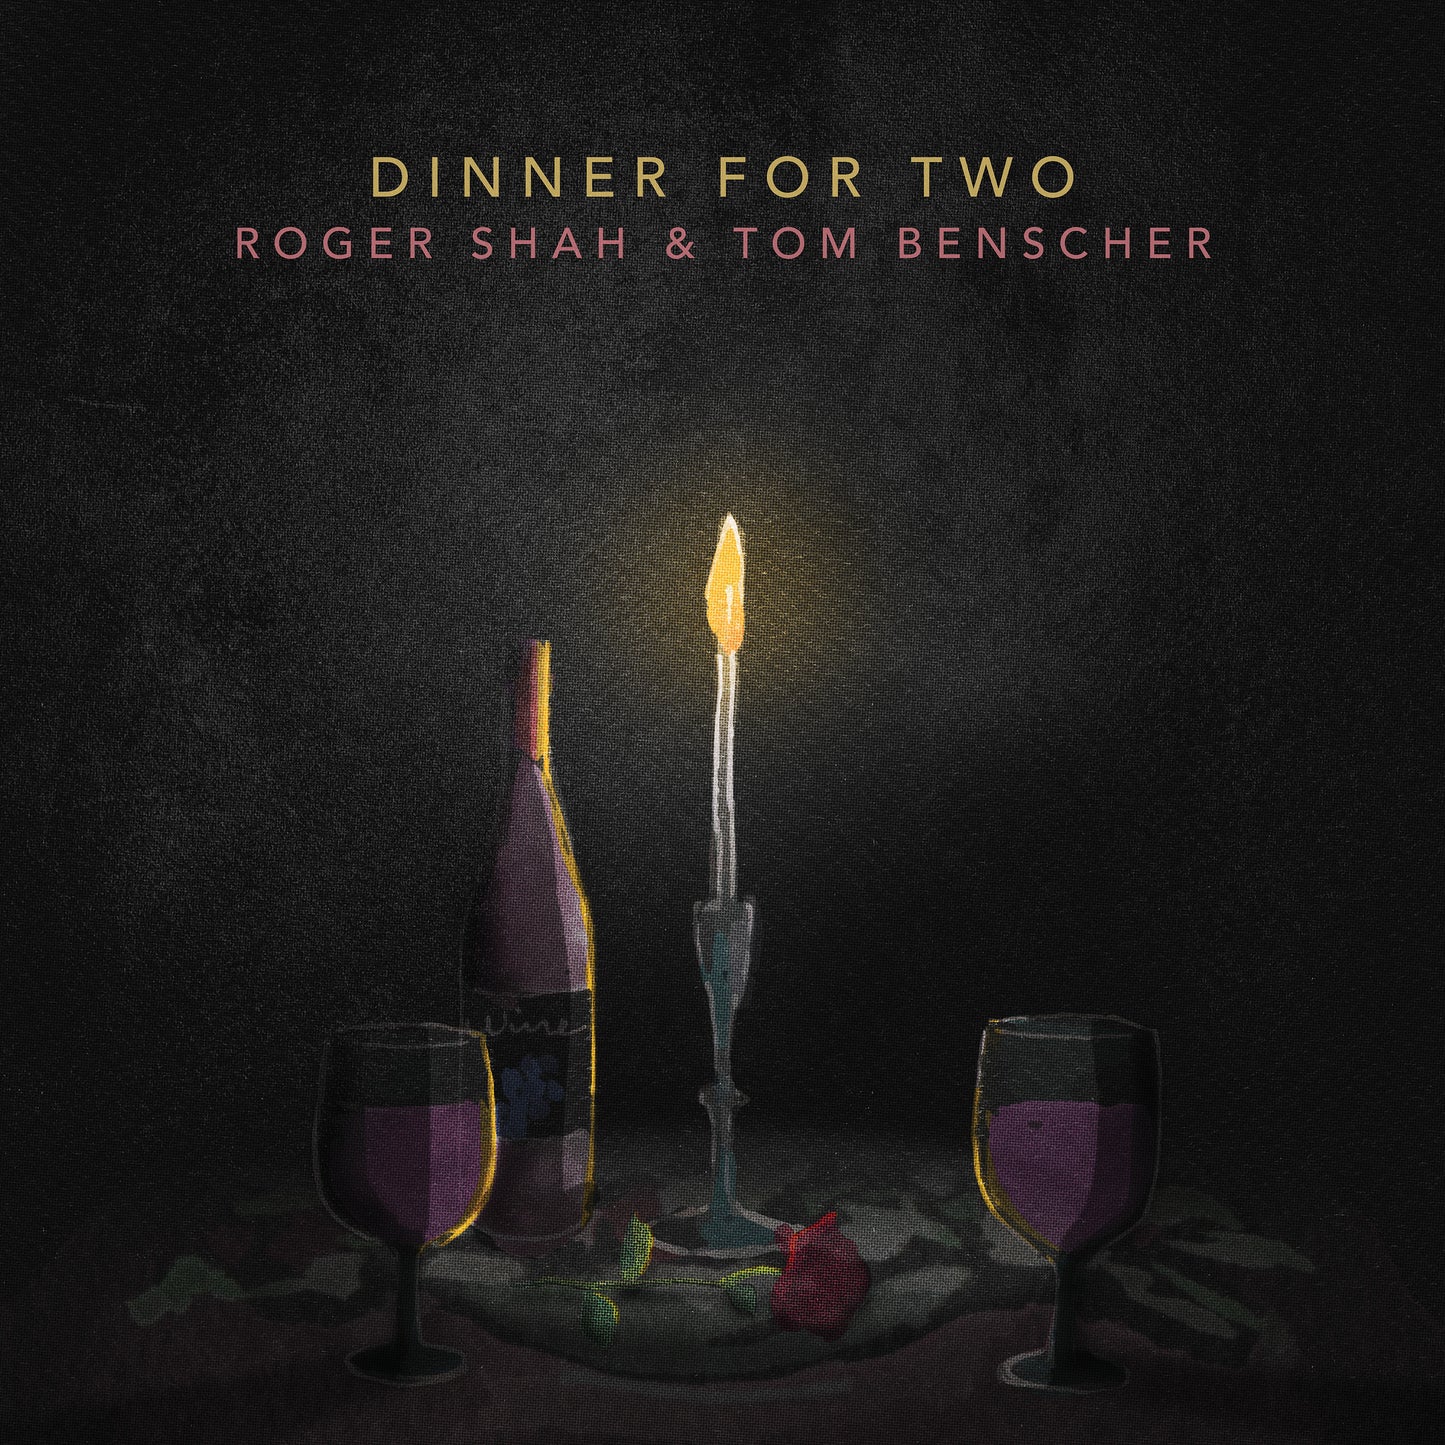 Roger Shah & Tom Benscher - Dinner For Two